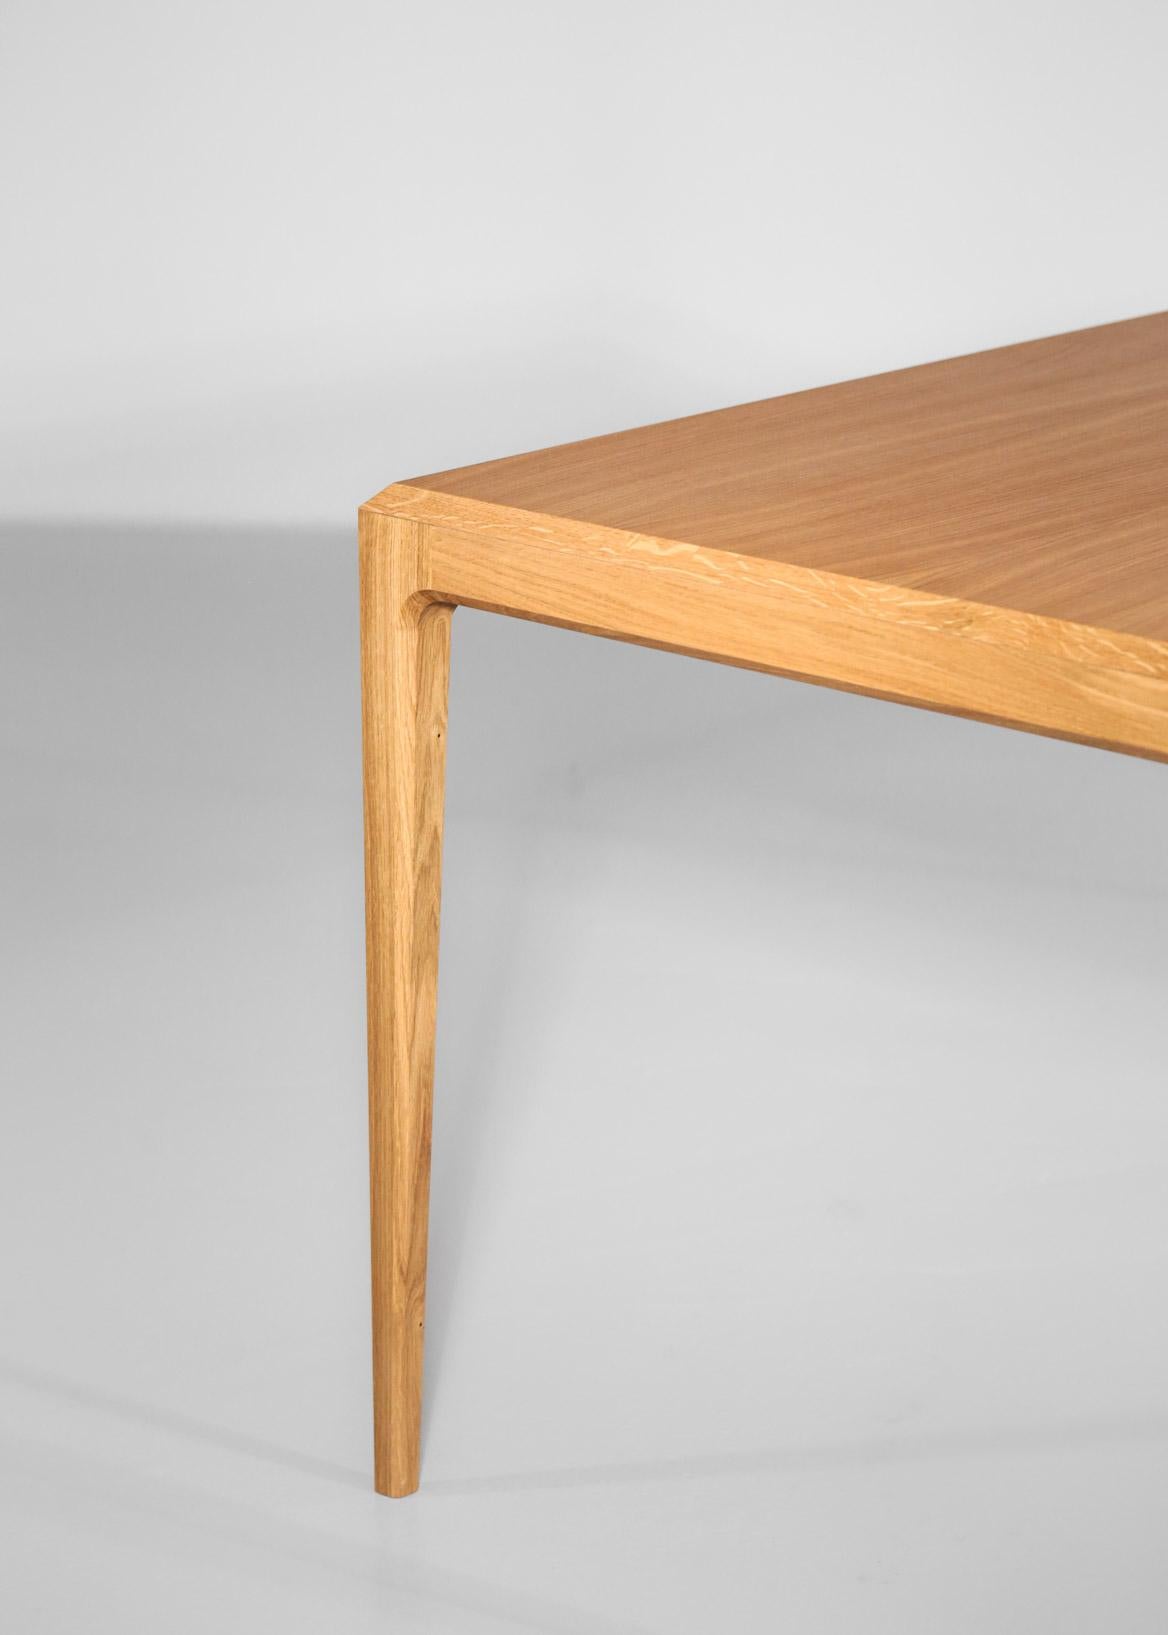 Large Modern Table in Oak Scandinavian Design 4